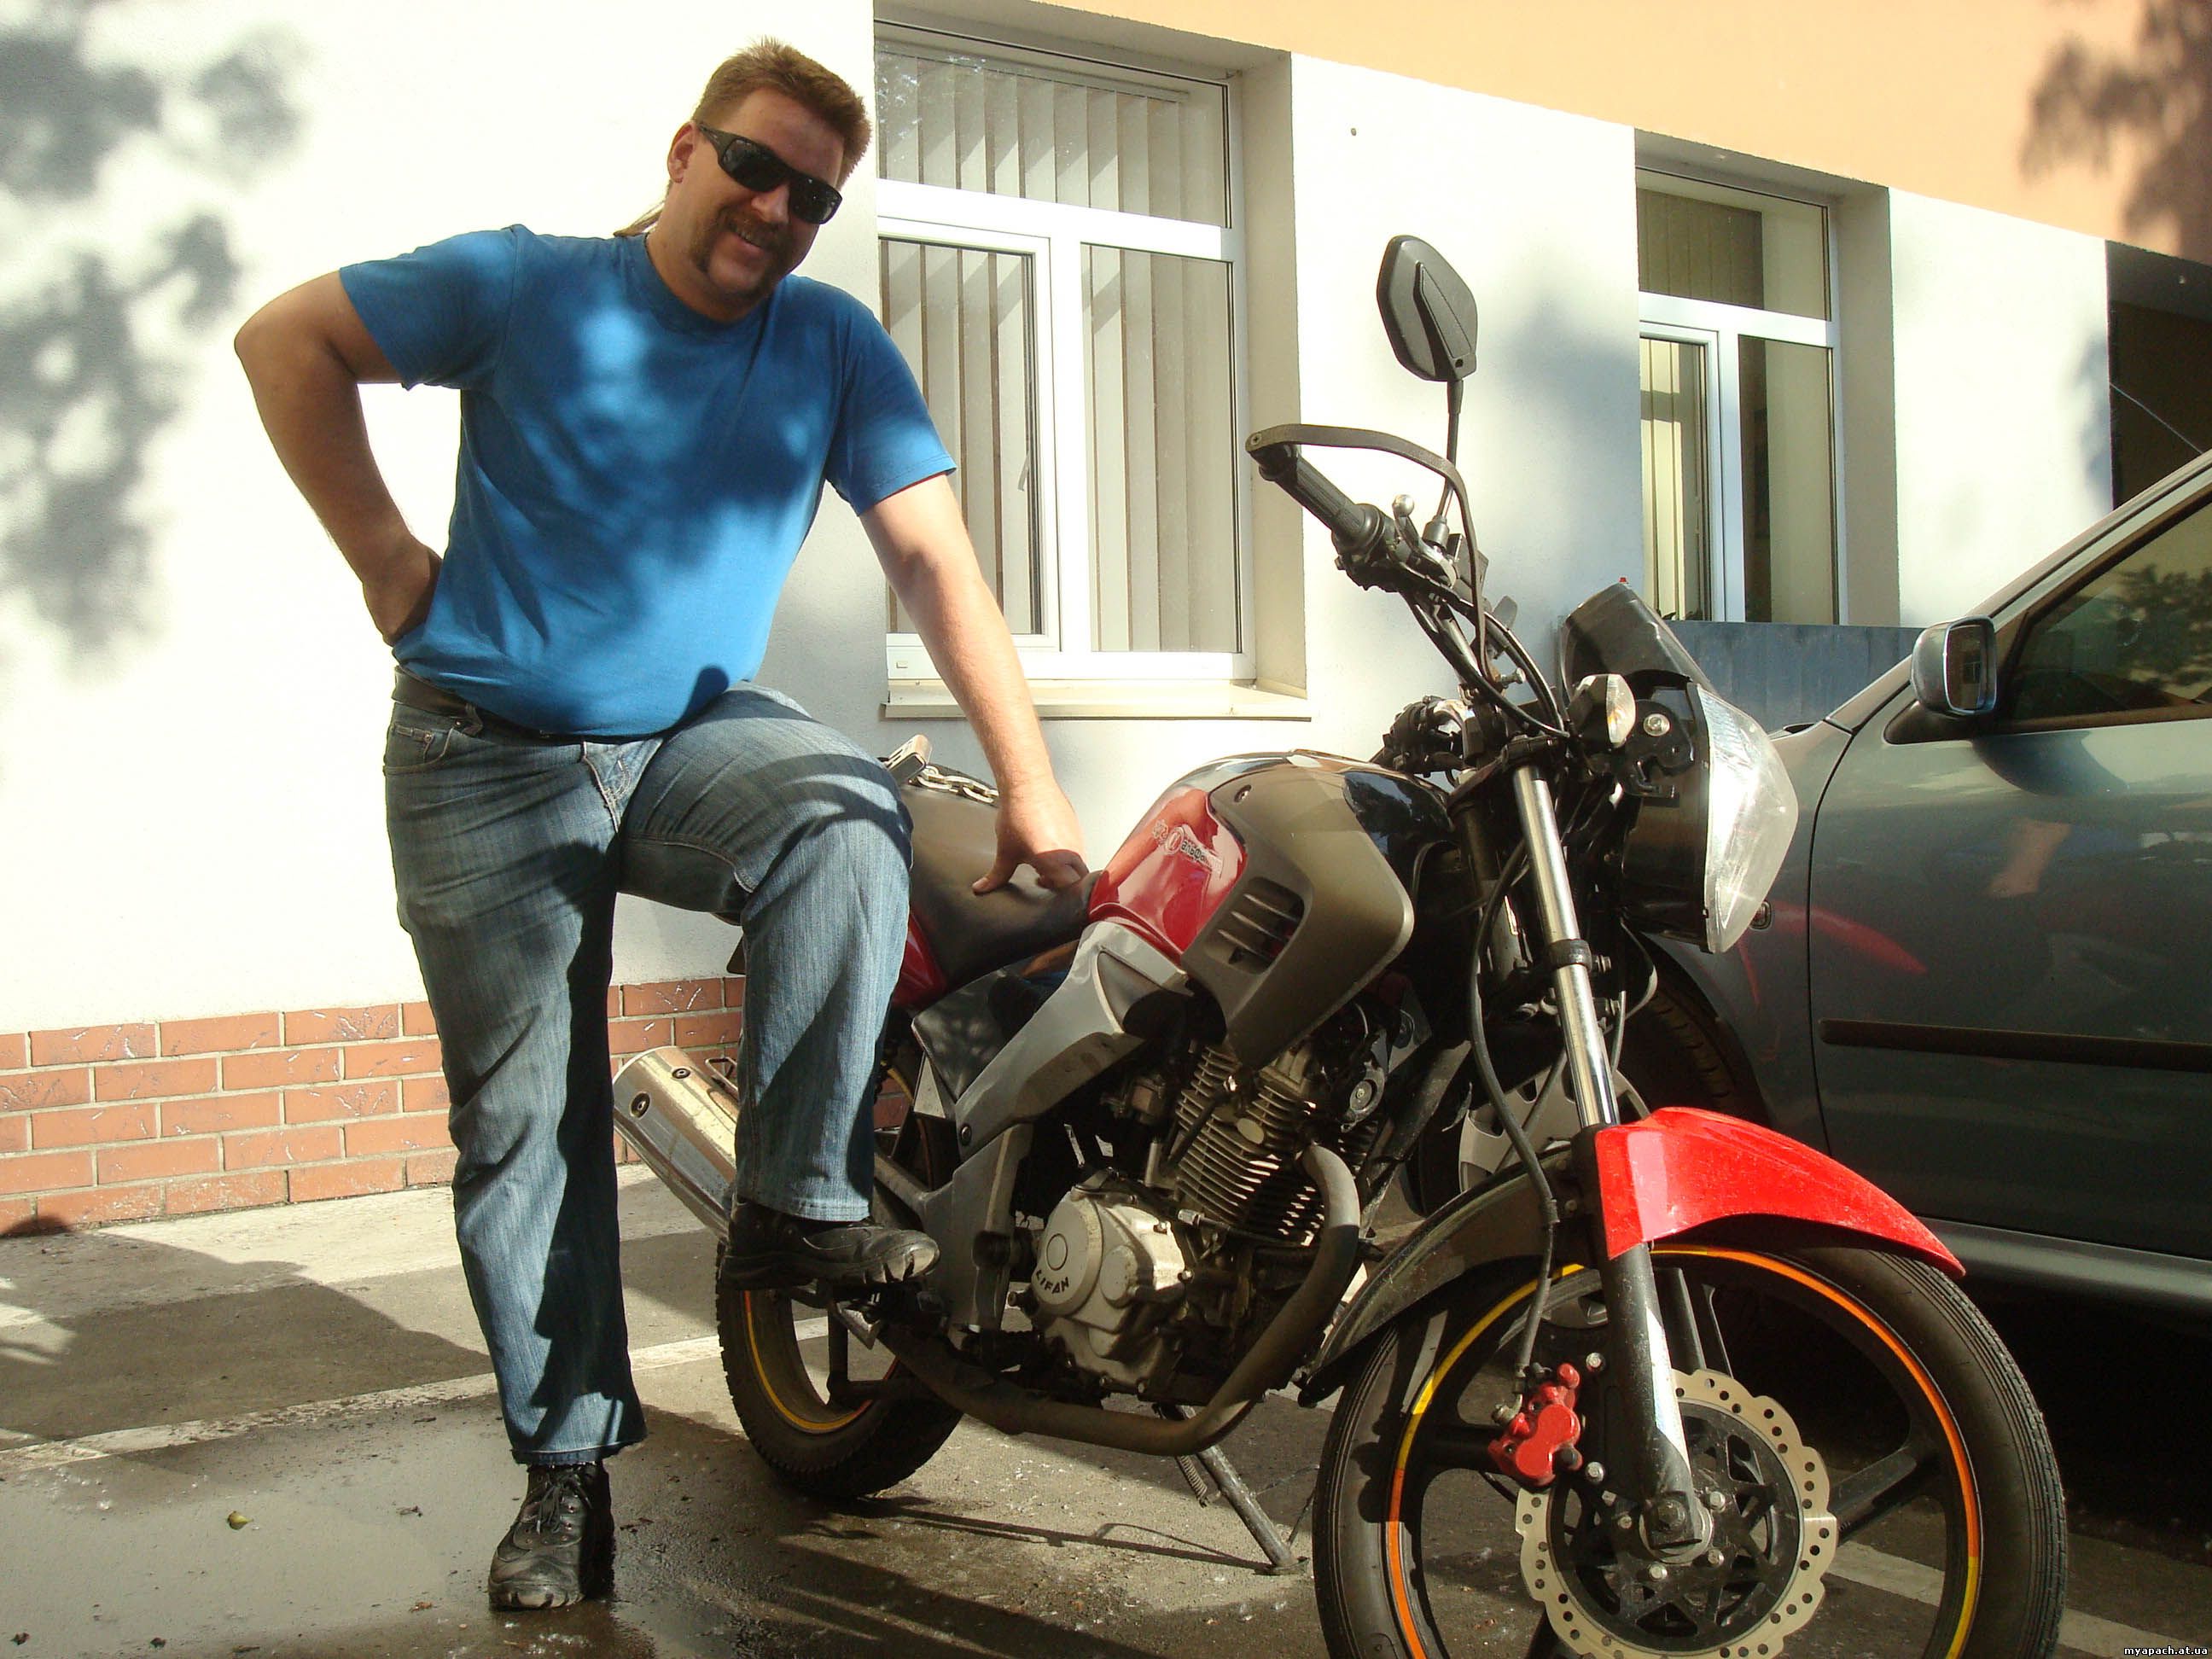 Grom біля свого улюбленого мотоцикла - Альфамото Апачі 200сс